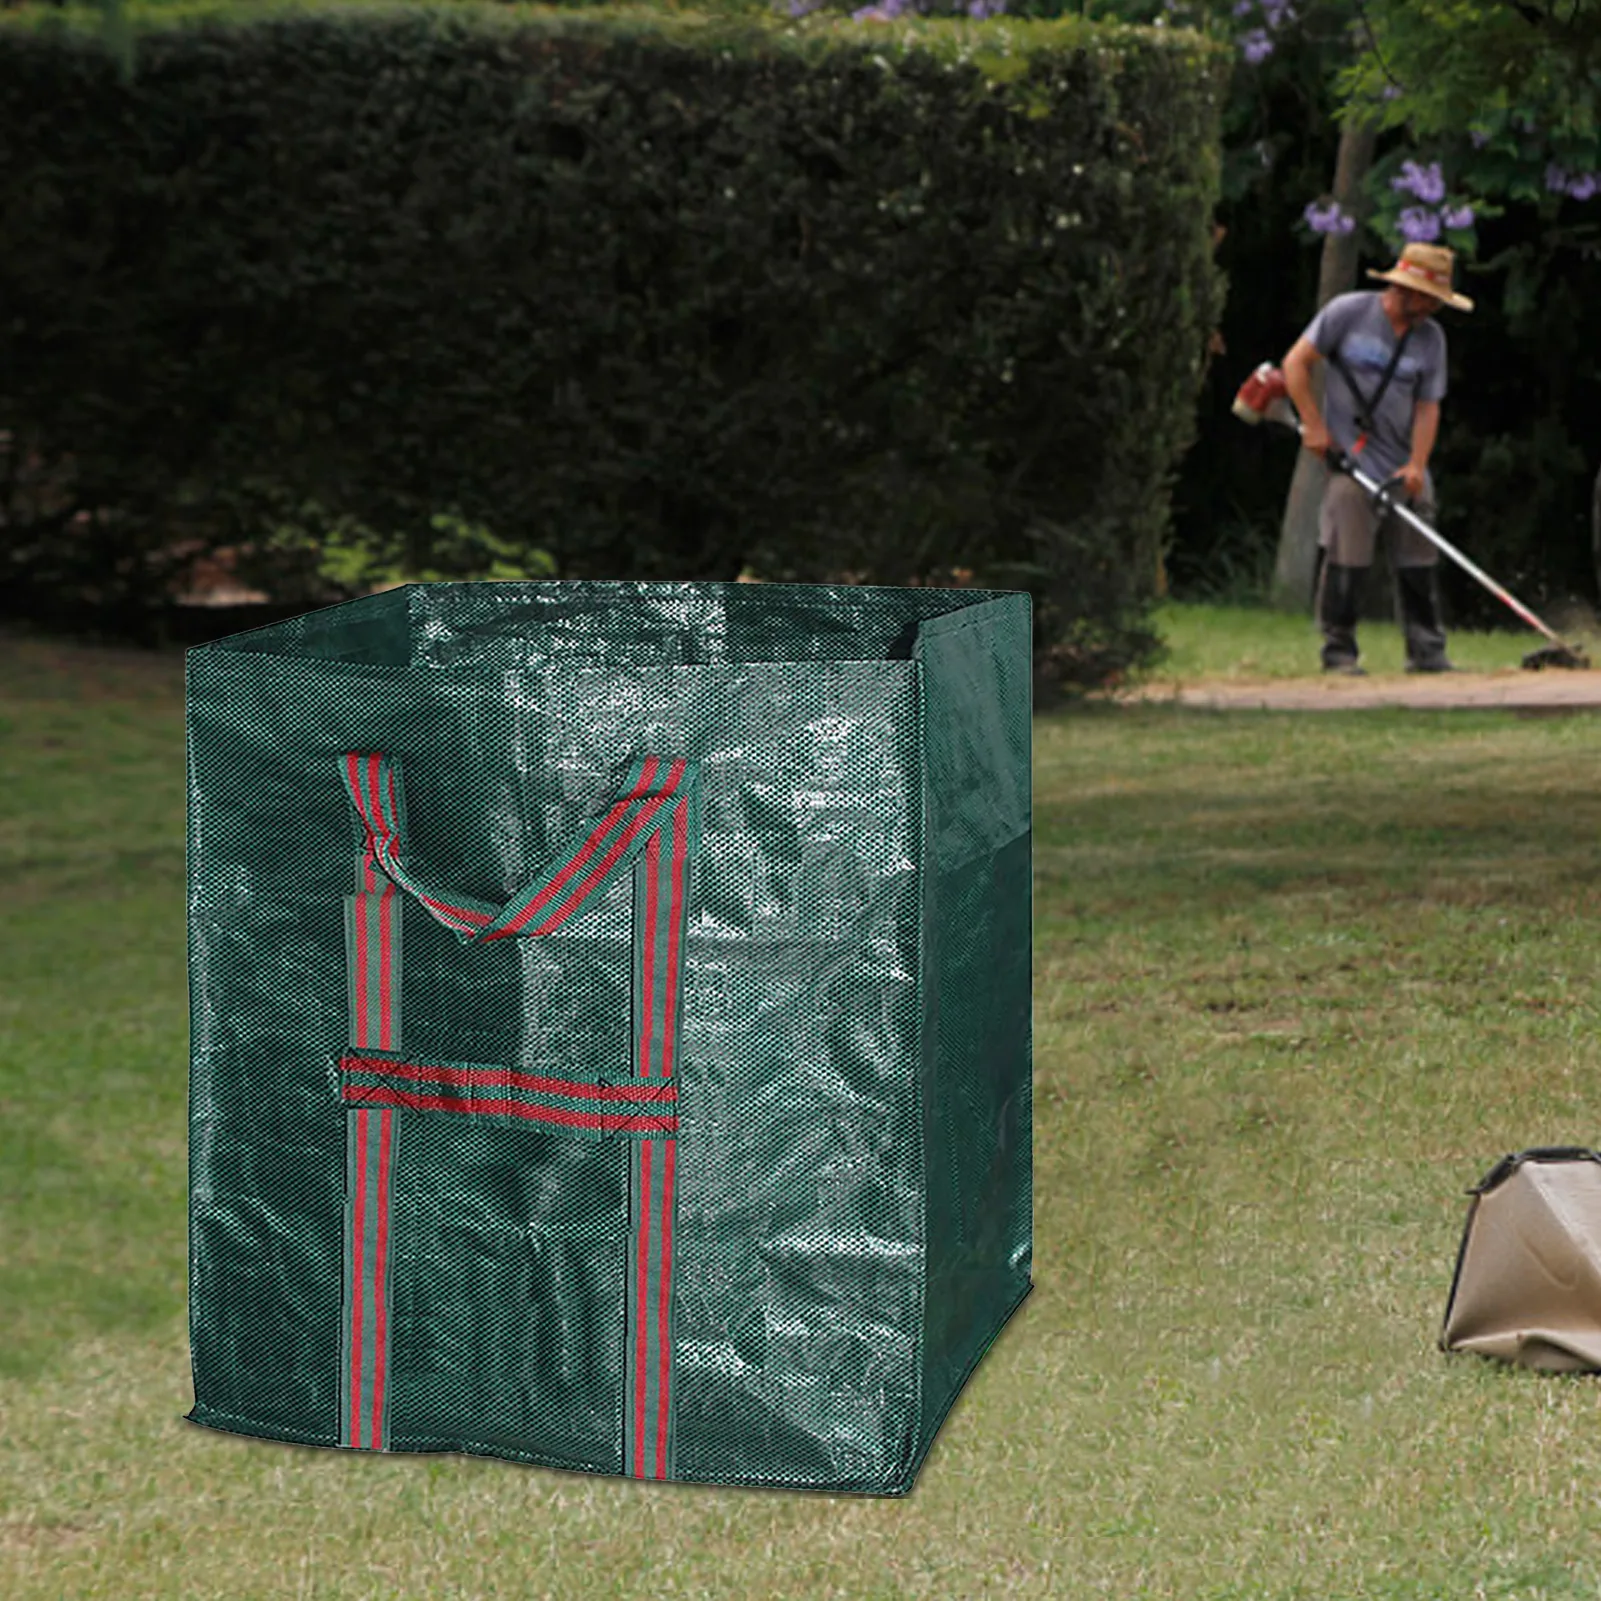 

Садовые мешки для мусора, пакеты для хранения отходов во дворе, в форме листа, с рисунком листьев дерева, мусорный контейнер для патио